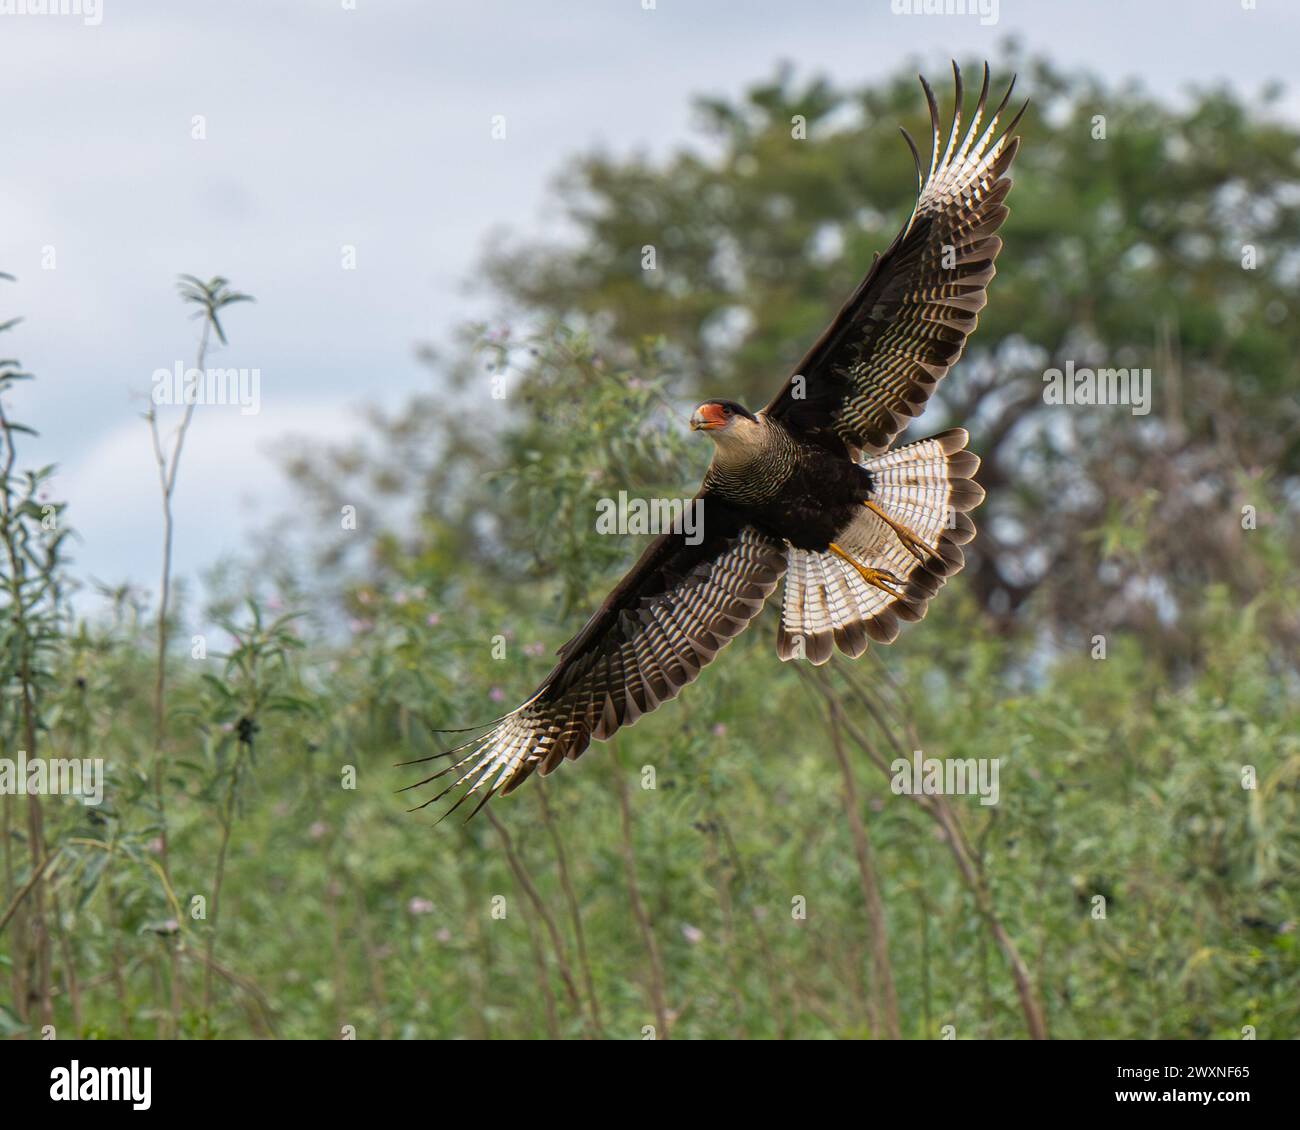 Ein wunderschöner Schuss eines Caracara-Vogels, der in einem Wald fliegt Stockfoto